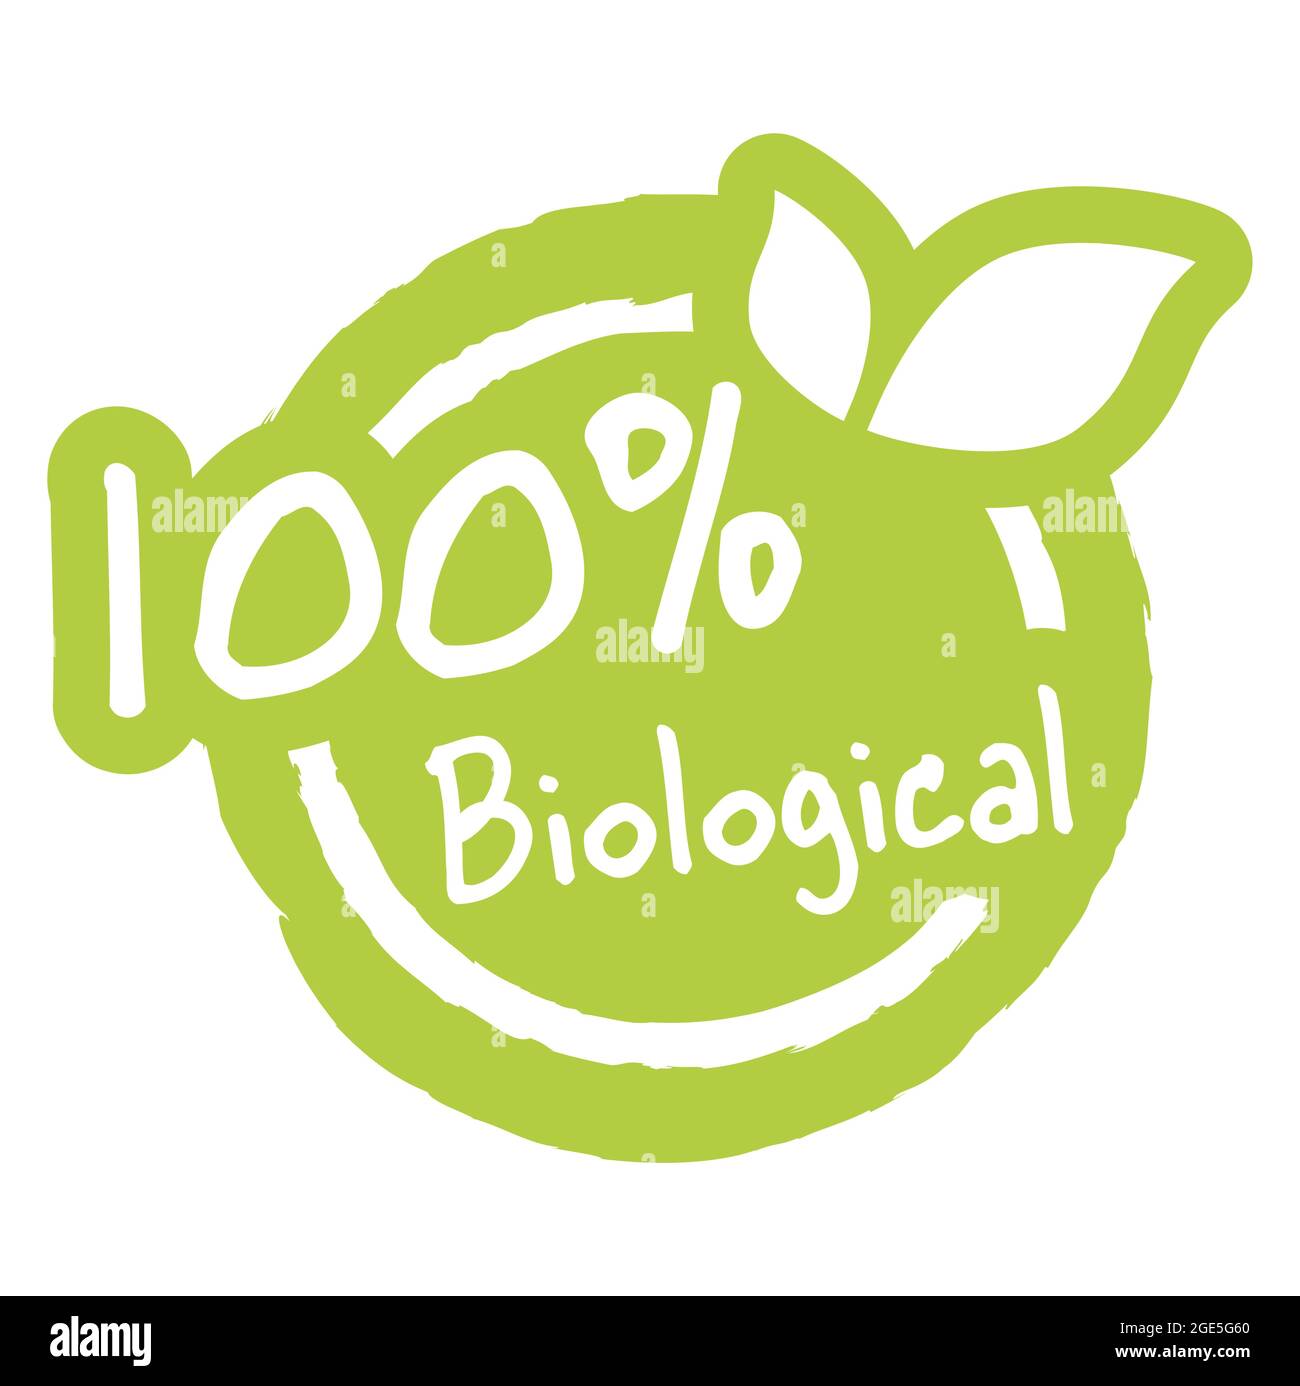 fichier vectoriel eps timbre rond moderne vert avec feuilles, texte blanc 100% biologique Illustration de Vecteur